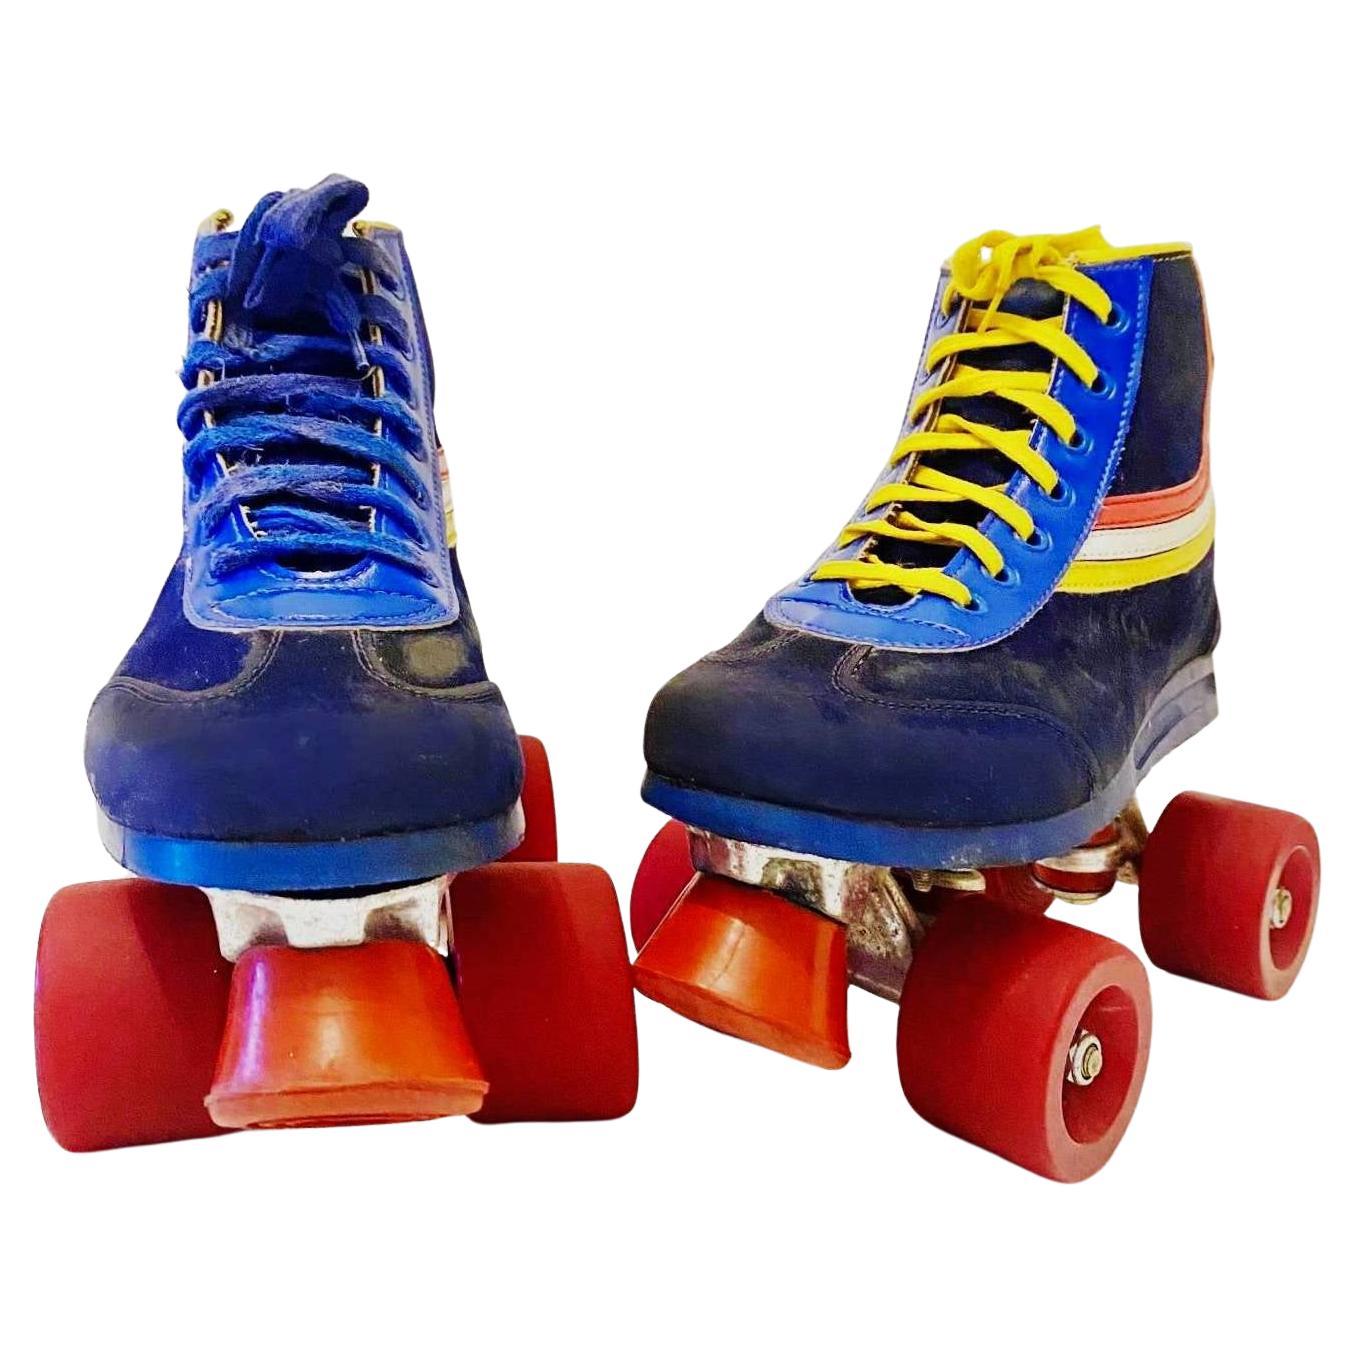 1980s Roller Skates - style - CHNGR